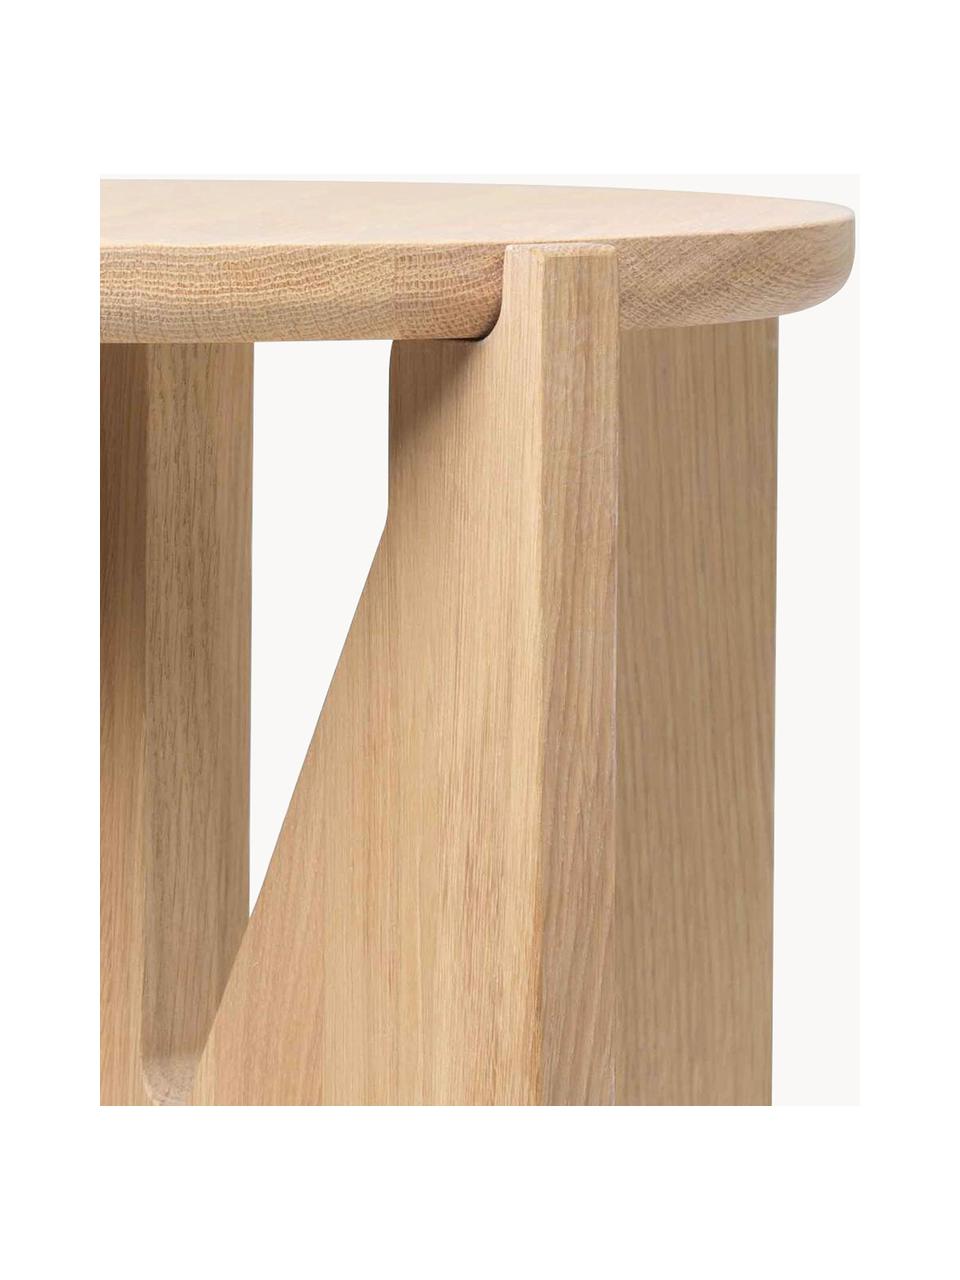 Beistelltisch Future aus Eichenholz, Eichenholz

Dieses Produkt wird aus nachhaltig gewonnenem, FSC®-zertifiziertem Holz gefertigt., Eichenholz, Ø 36 x H 42 cm